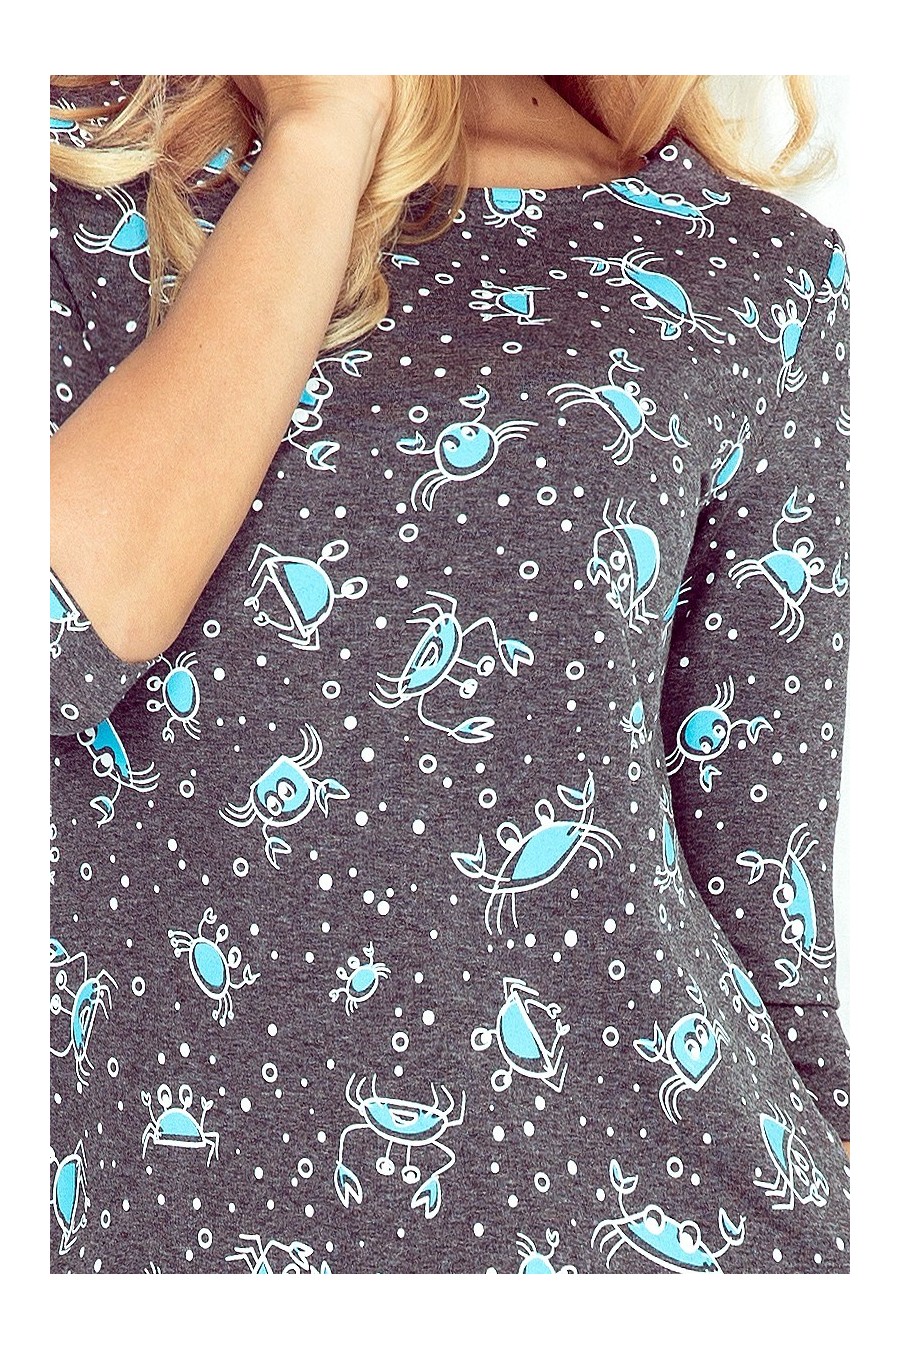 Jola - šaty s kapsami - Grafitové + modré kraby 40-13